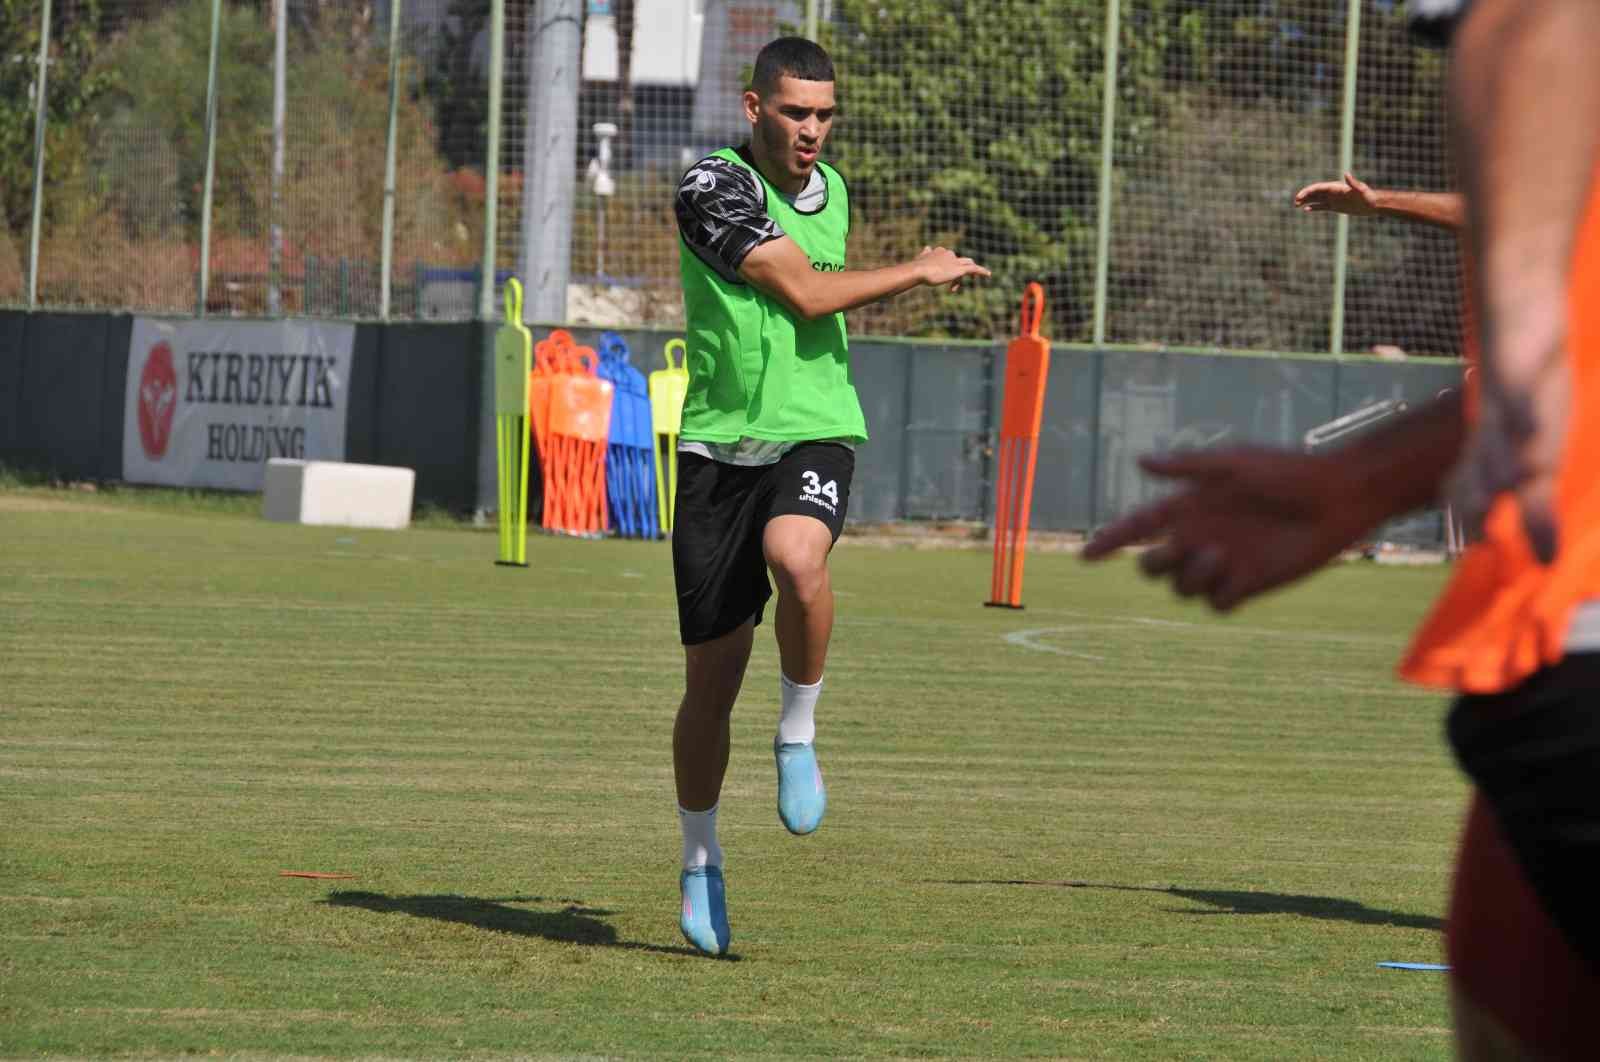 Alanyaspor, Hatayspor maçı hazırlıklarını tamamladı